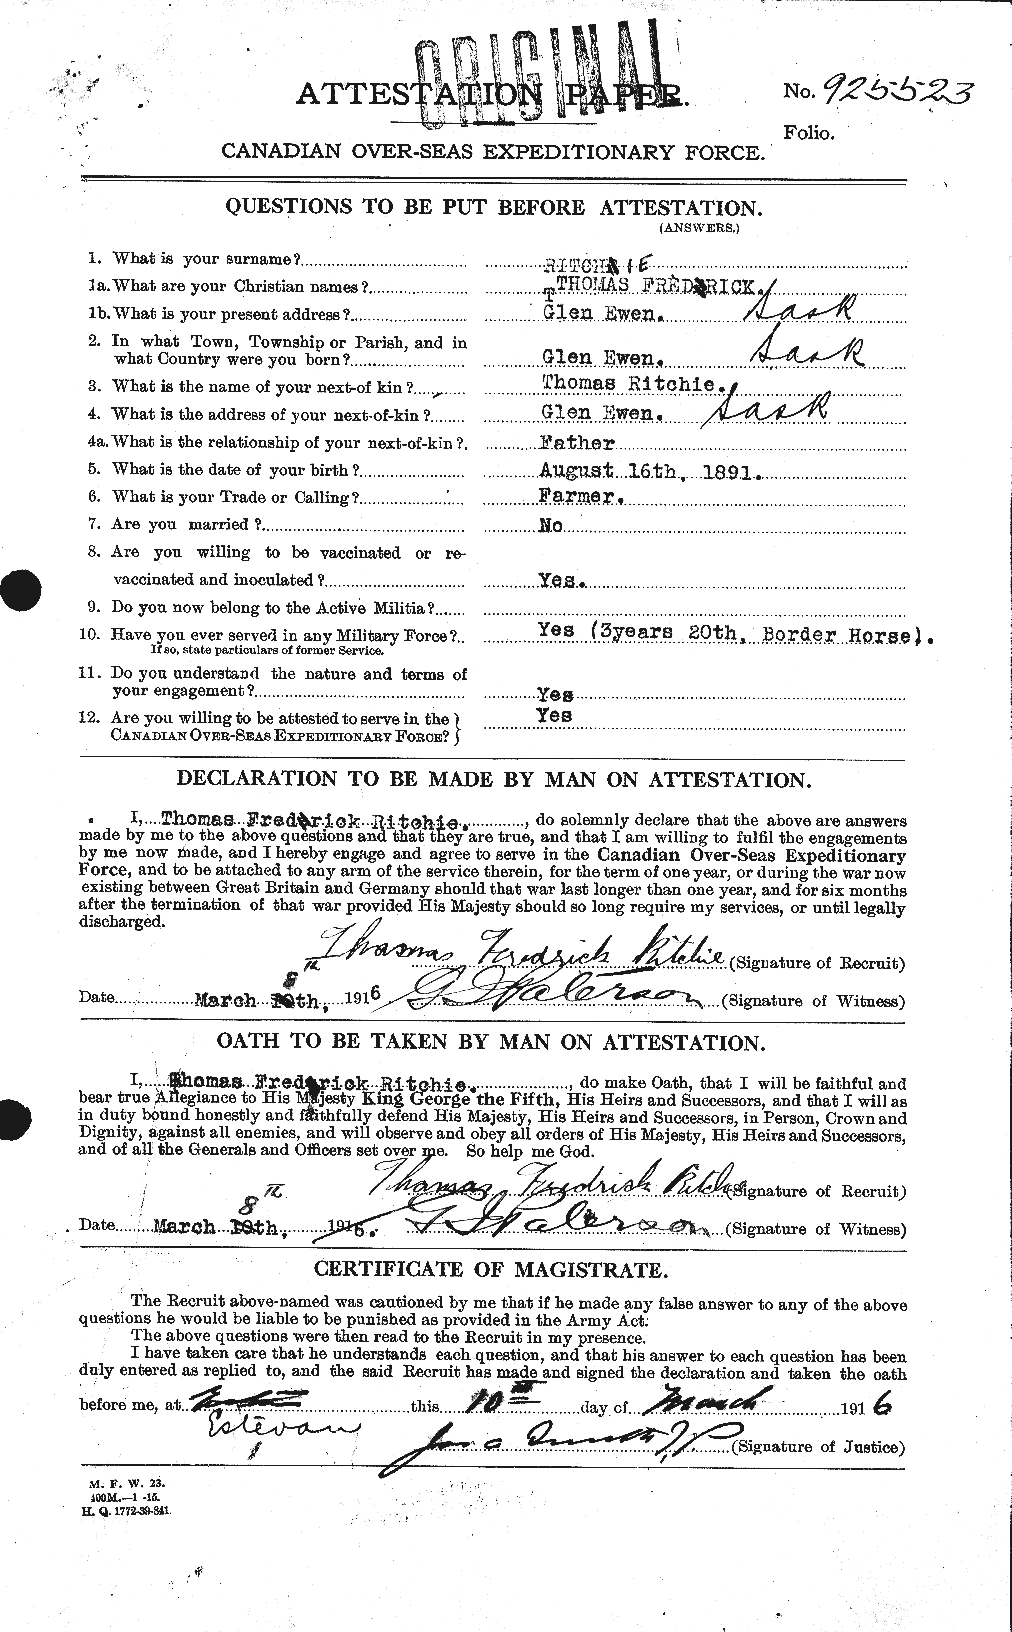 Dossiers du Personnel de la Première Guerre mondiale - CEC 605503a